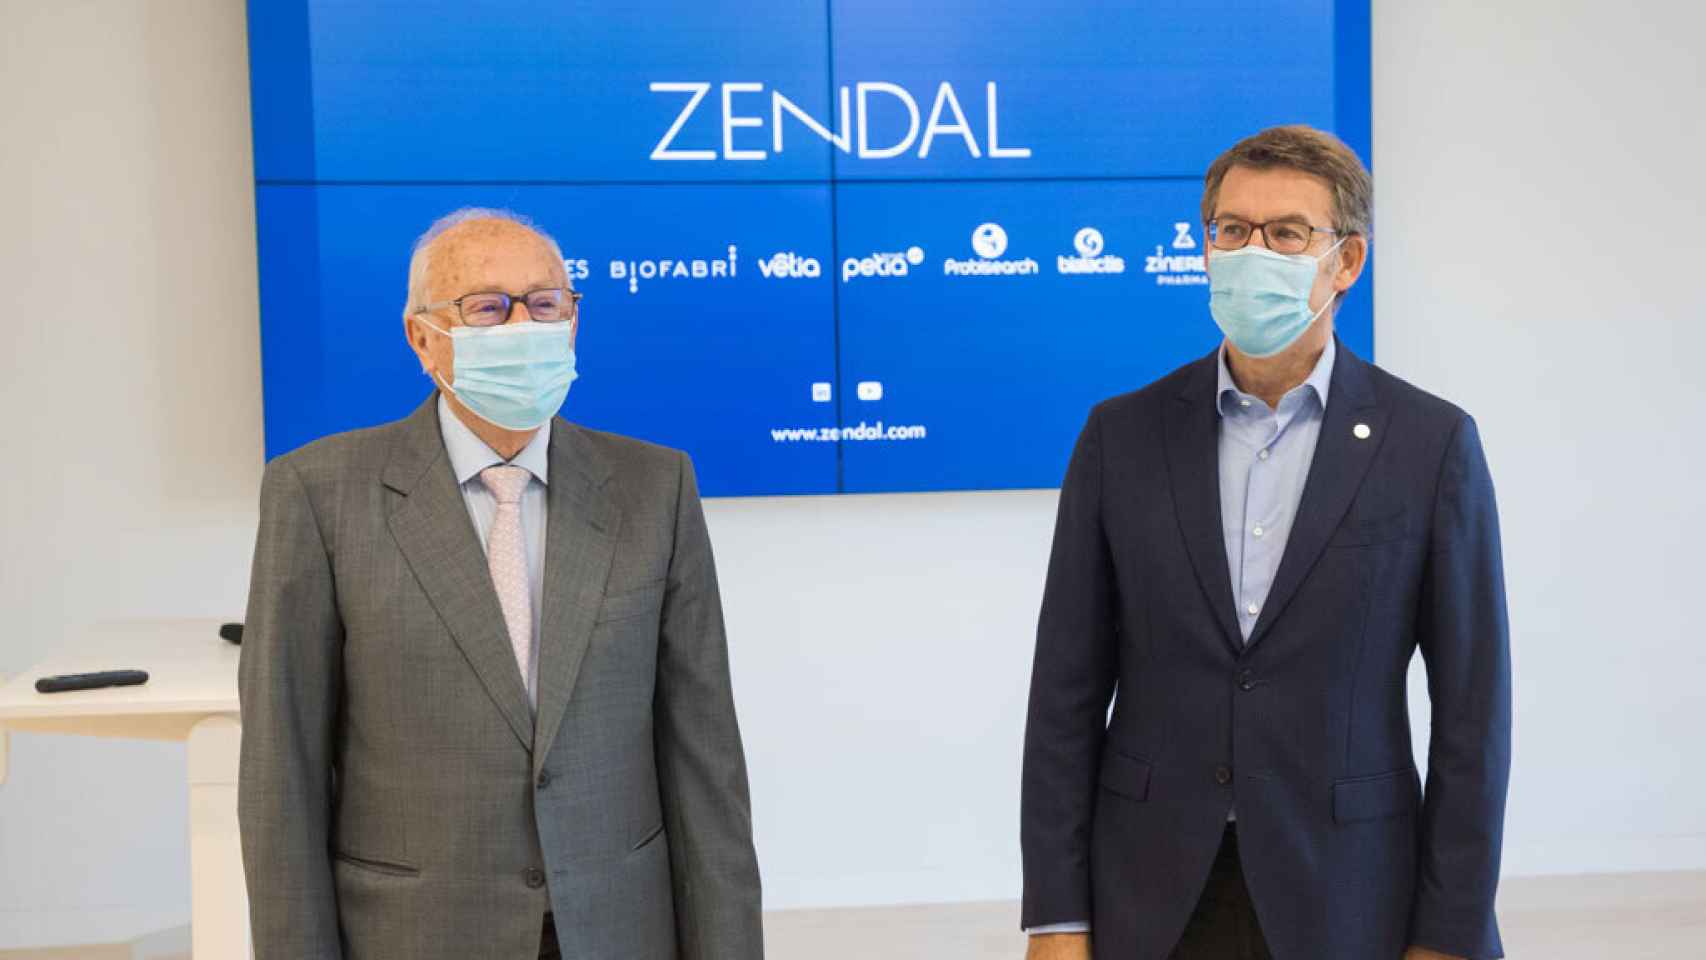 El presidente de Galicia, Alberto Núñez Feijoó, en la fábrica de Zendal, a finales de octubre.